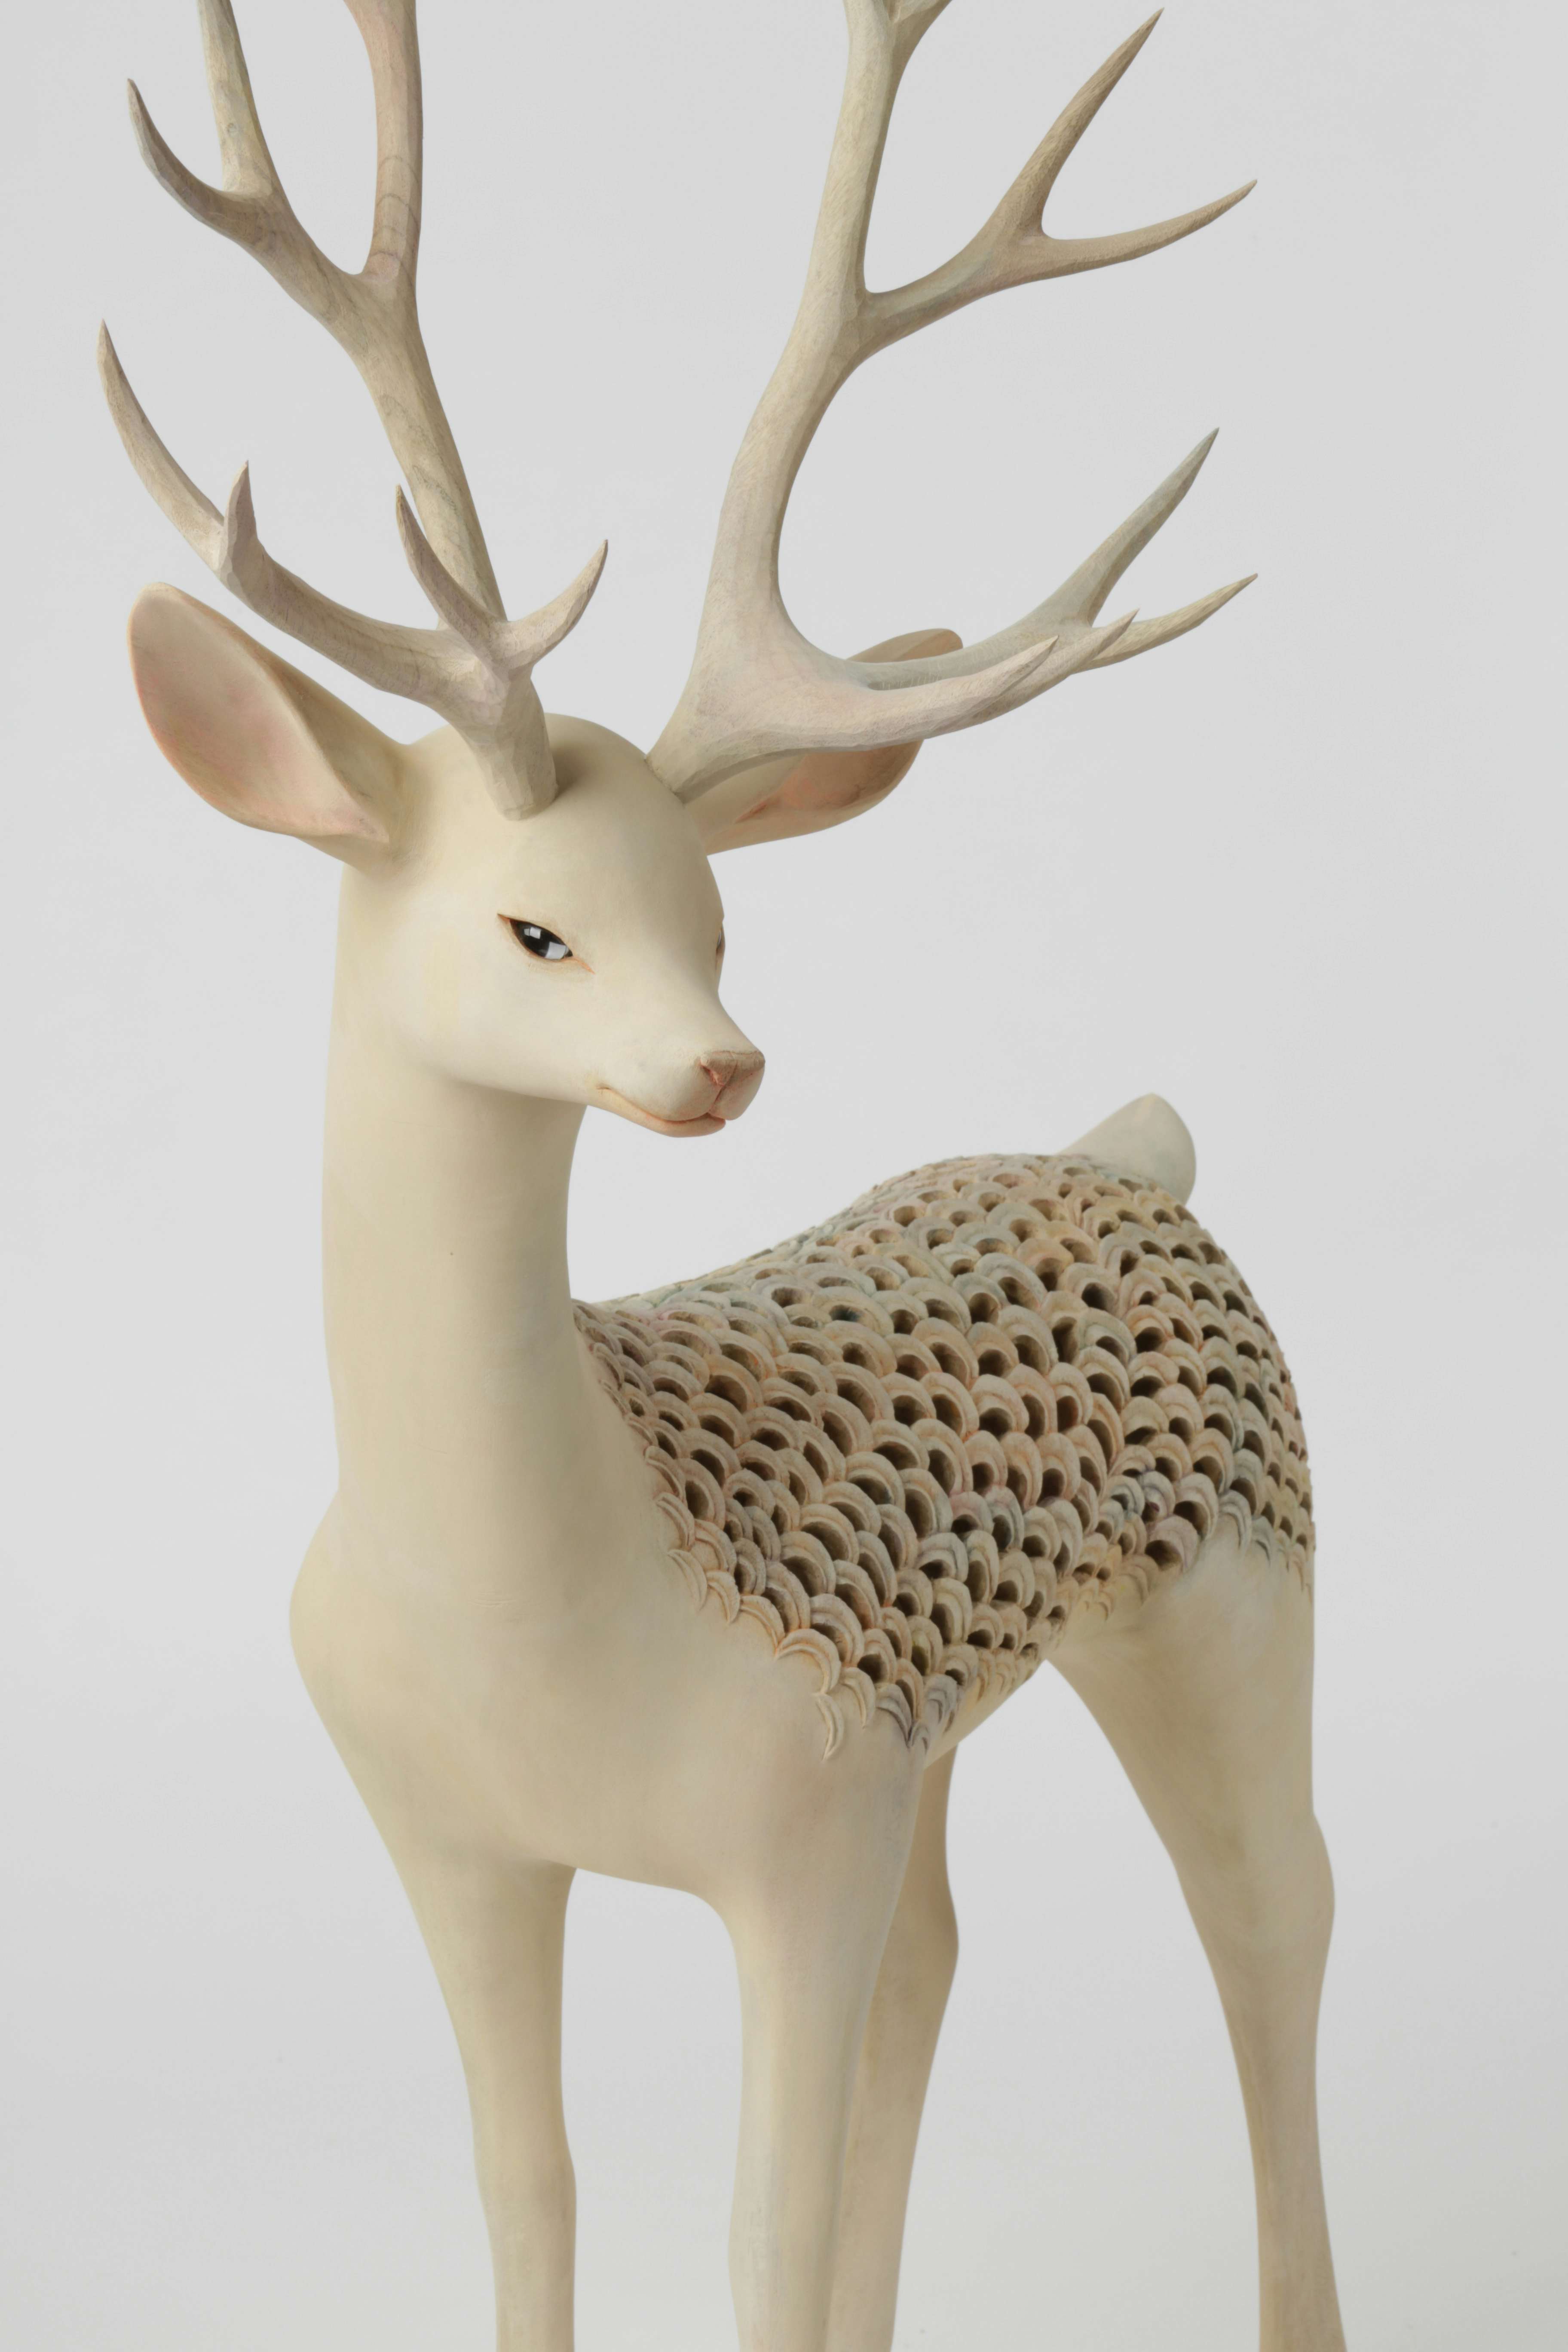 土屋仁応 Yoshimasa Tsuchiya Souvenir Collection Deer 01 シカ 